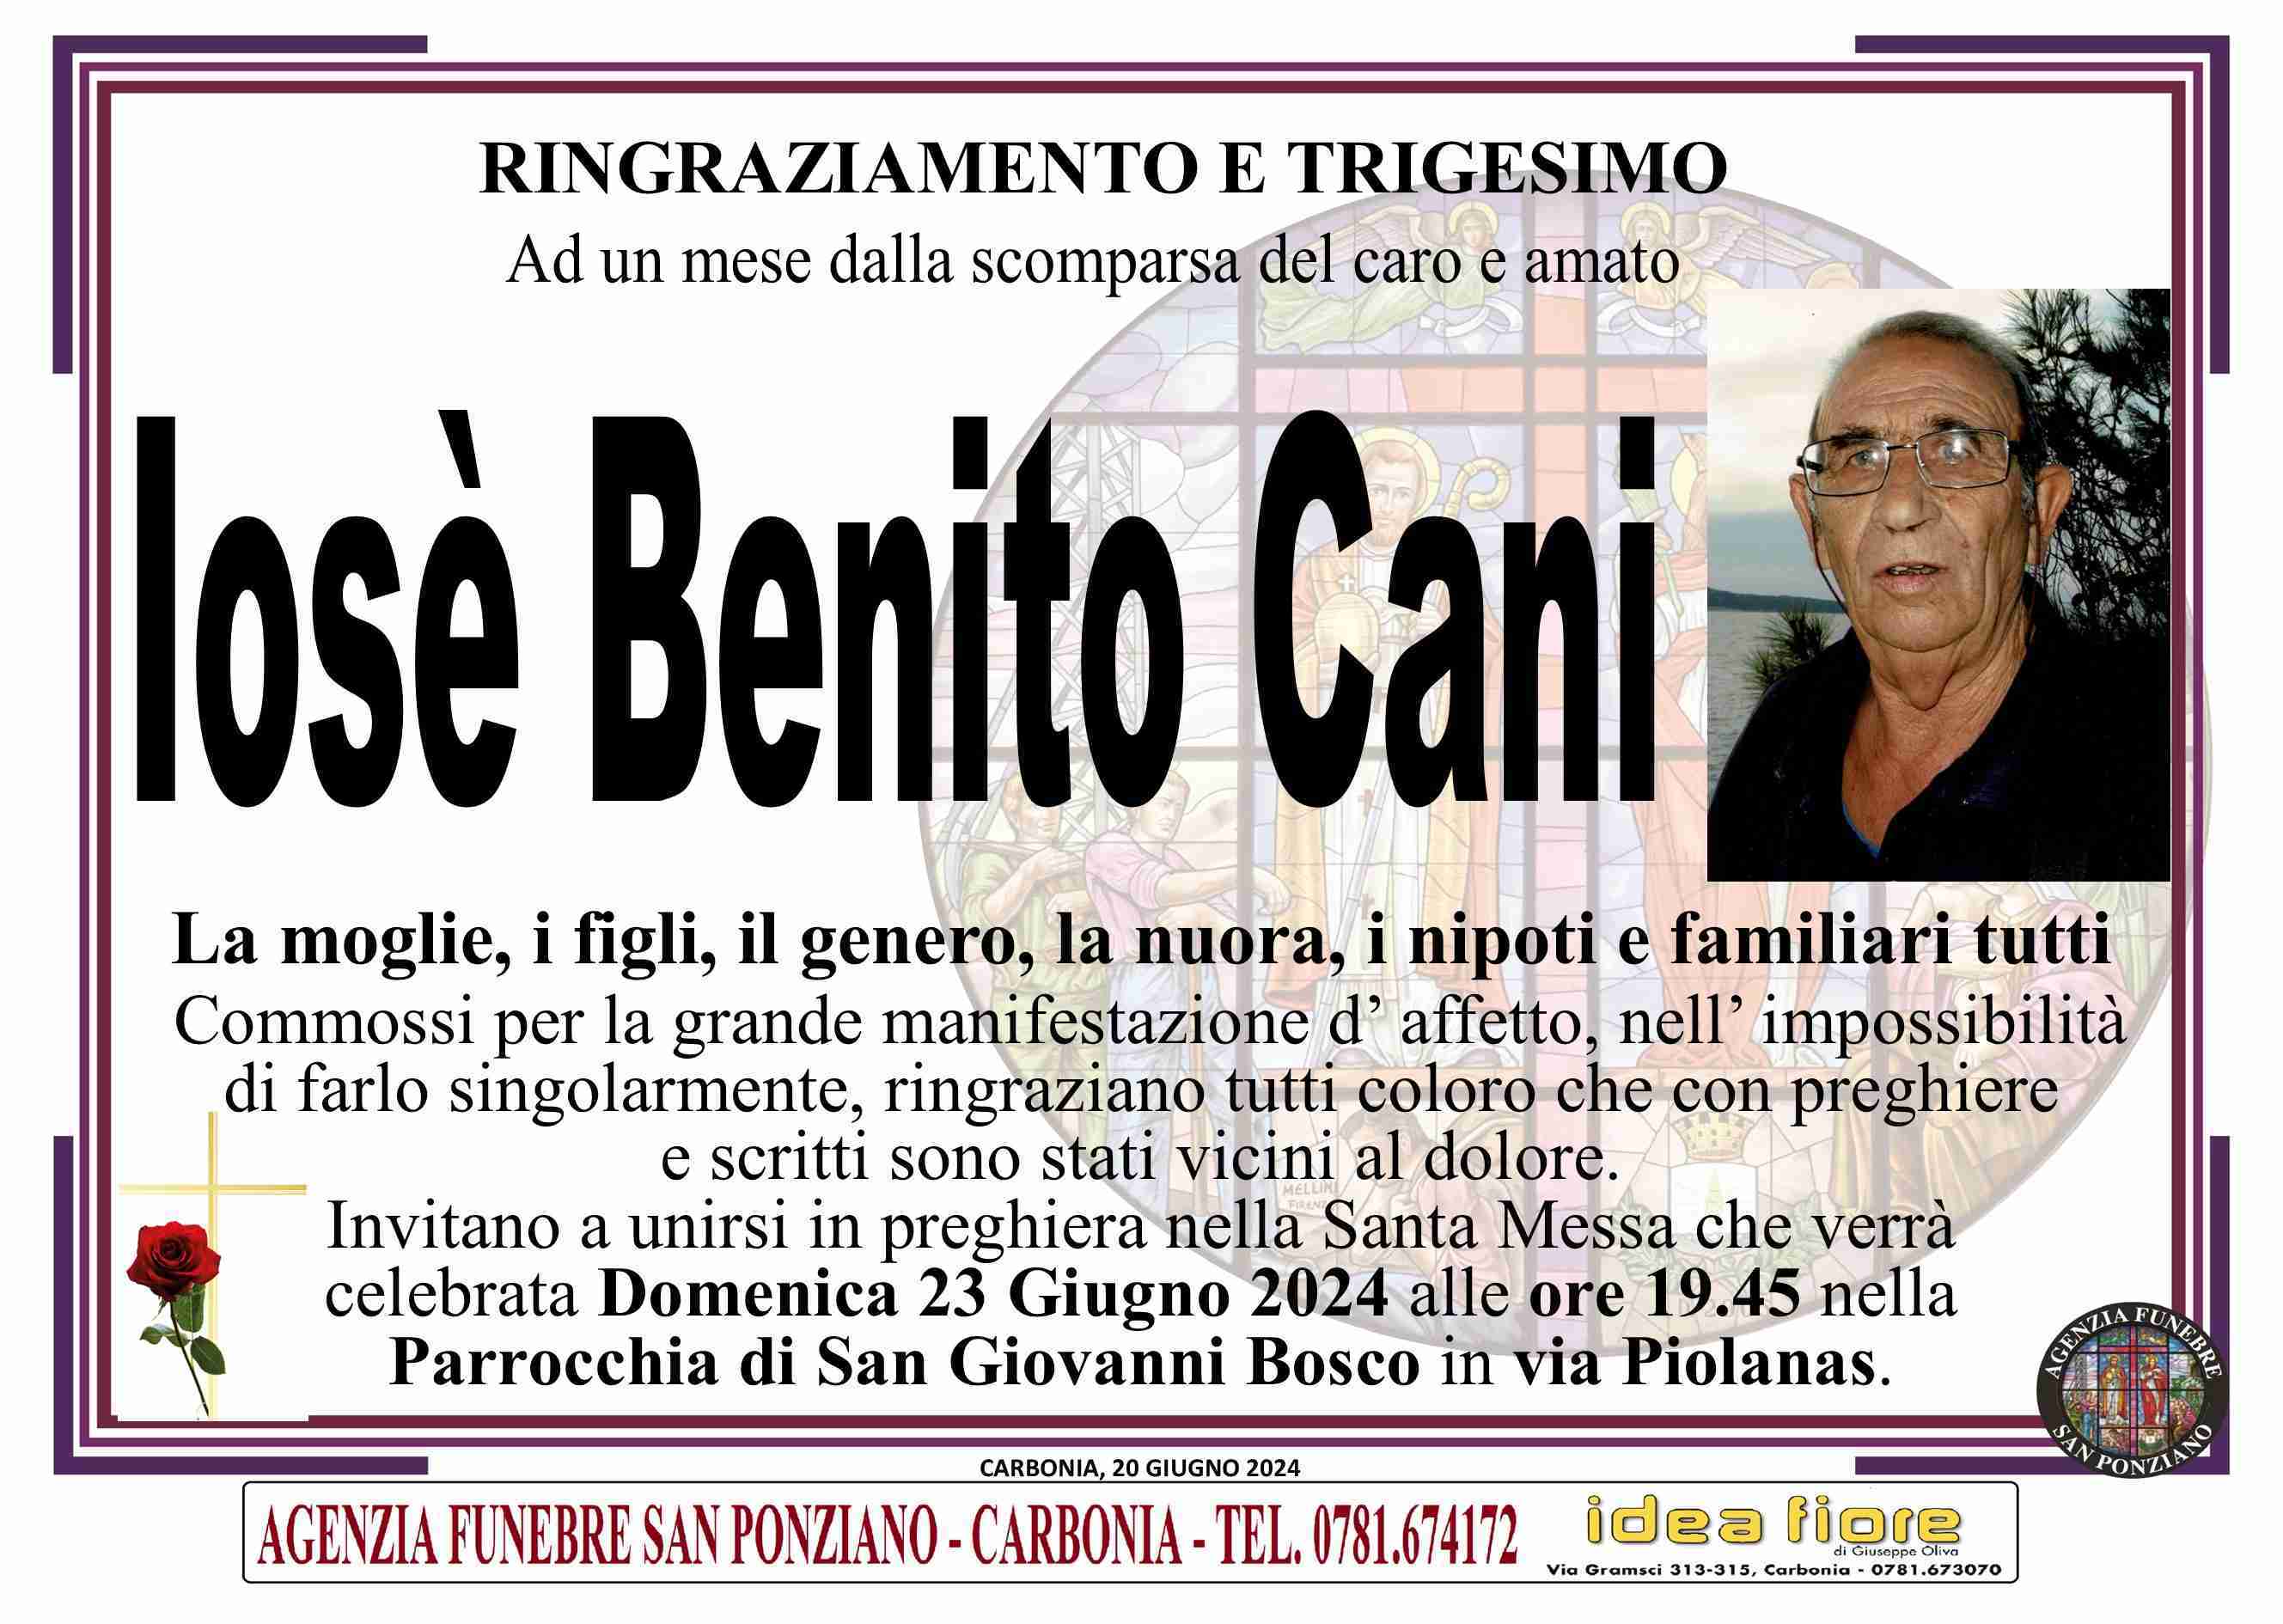 Iosè Benito Cani